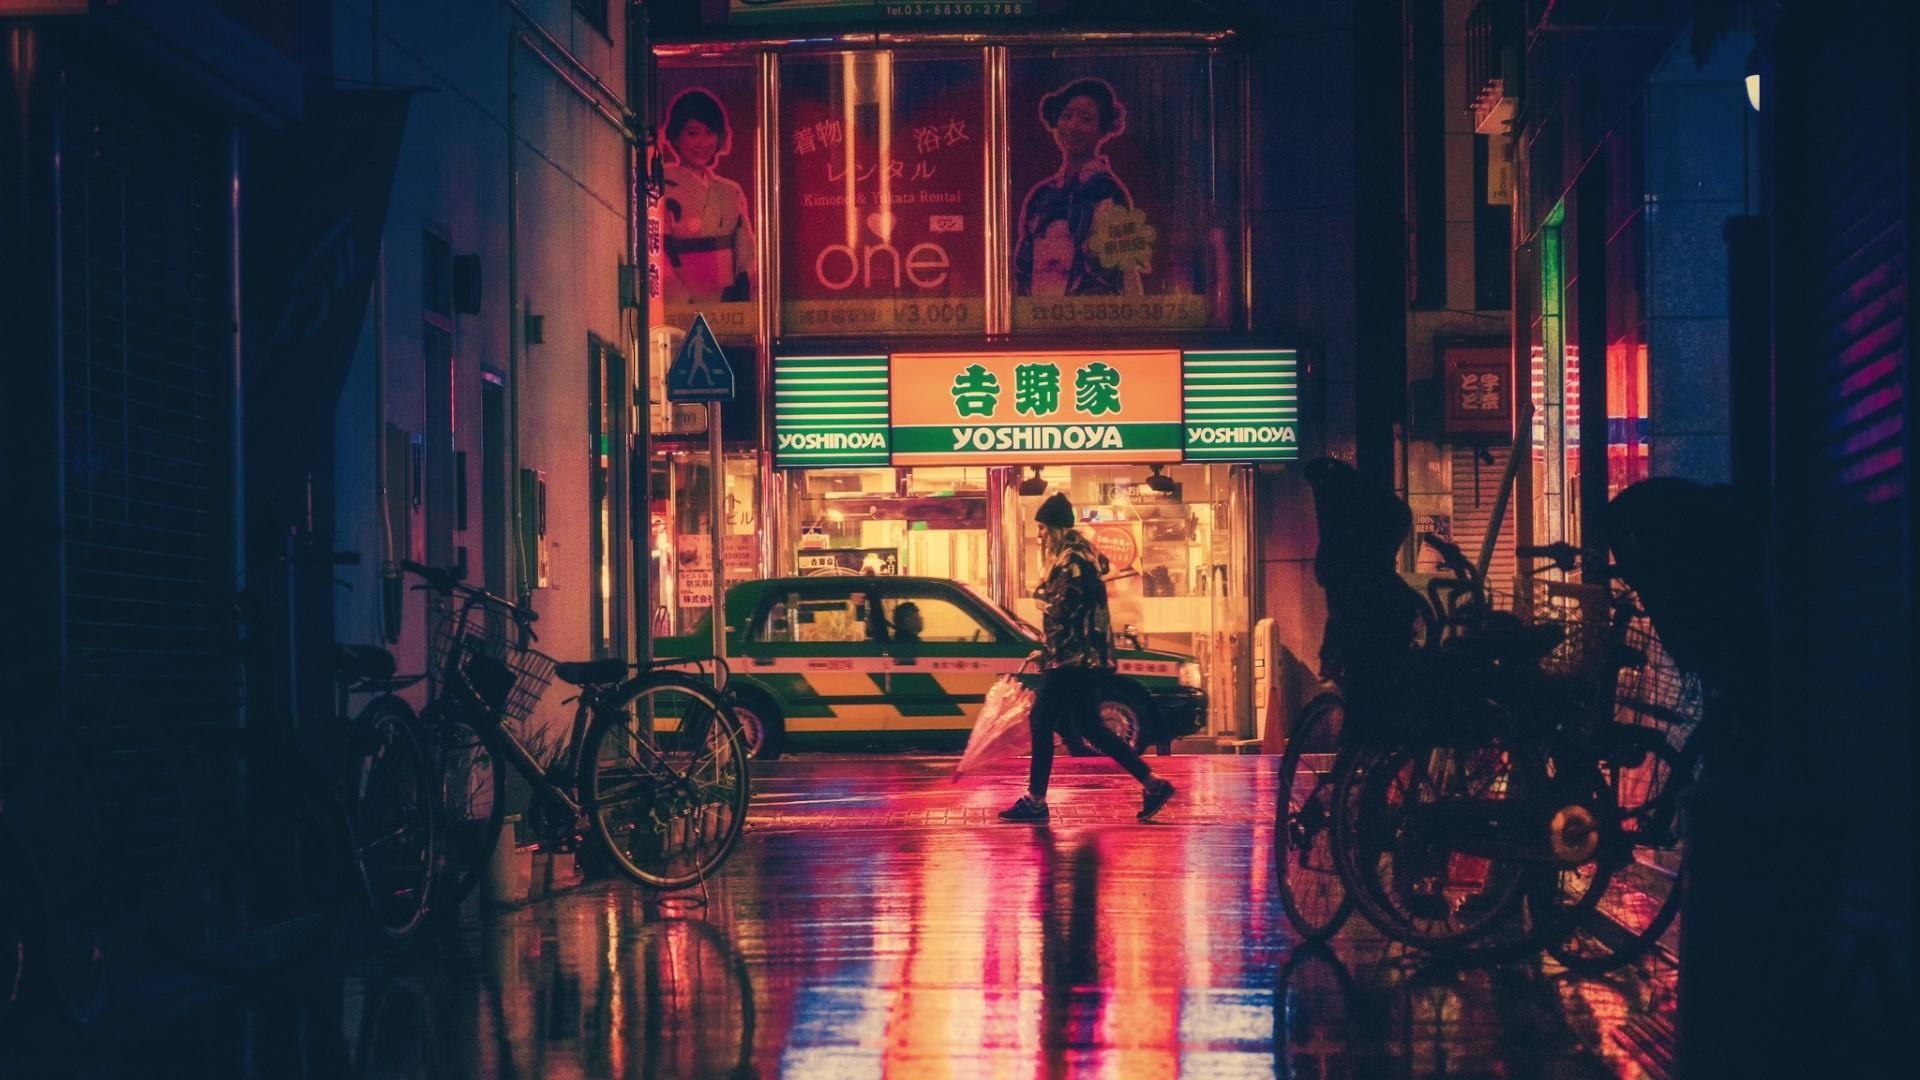 japan, night, street, asia, illuminated, text, architecture